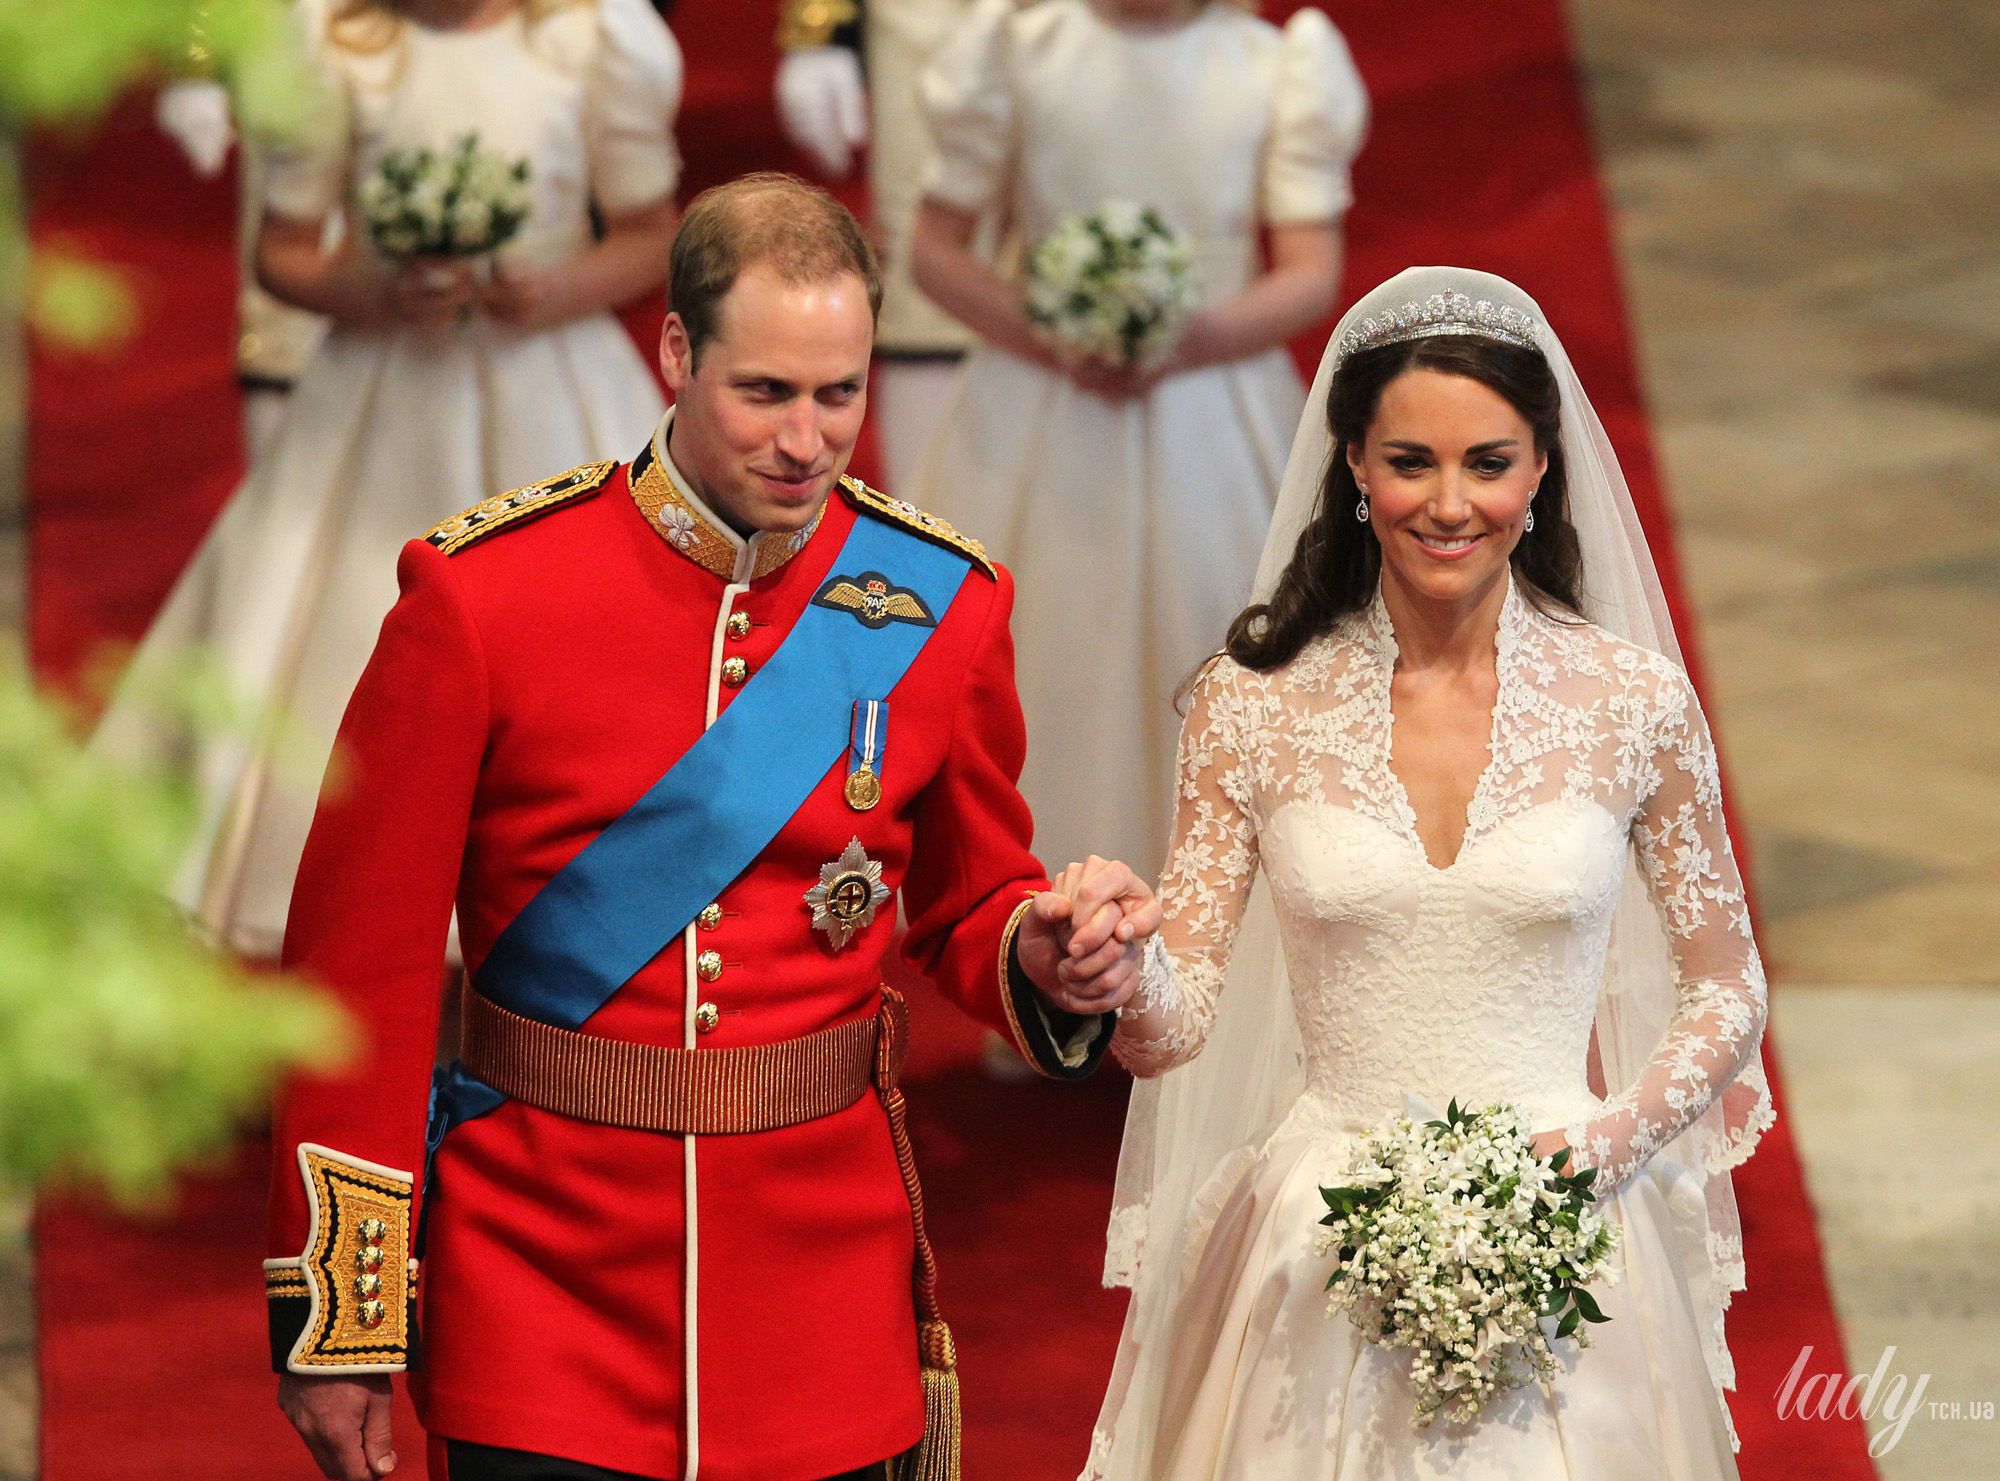 Миддлтон замуж вышла. Свадьба Кейт Миддлтон и принца Уильяма. Свадьба принца Уильяма и Кэтрин Миддлтон. Свадьба принца Уильяма, герцога Кембриджского, и Кэтрин Миддлтон. Герцог Кембриджский Уильям свадьба.